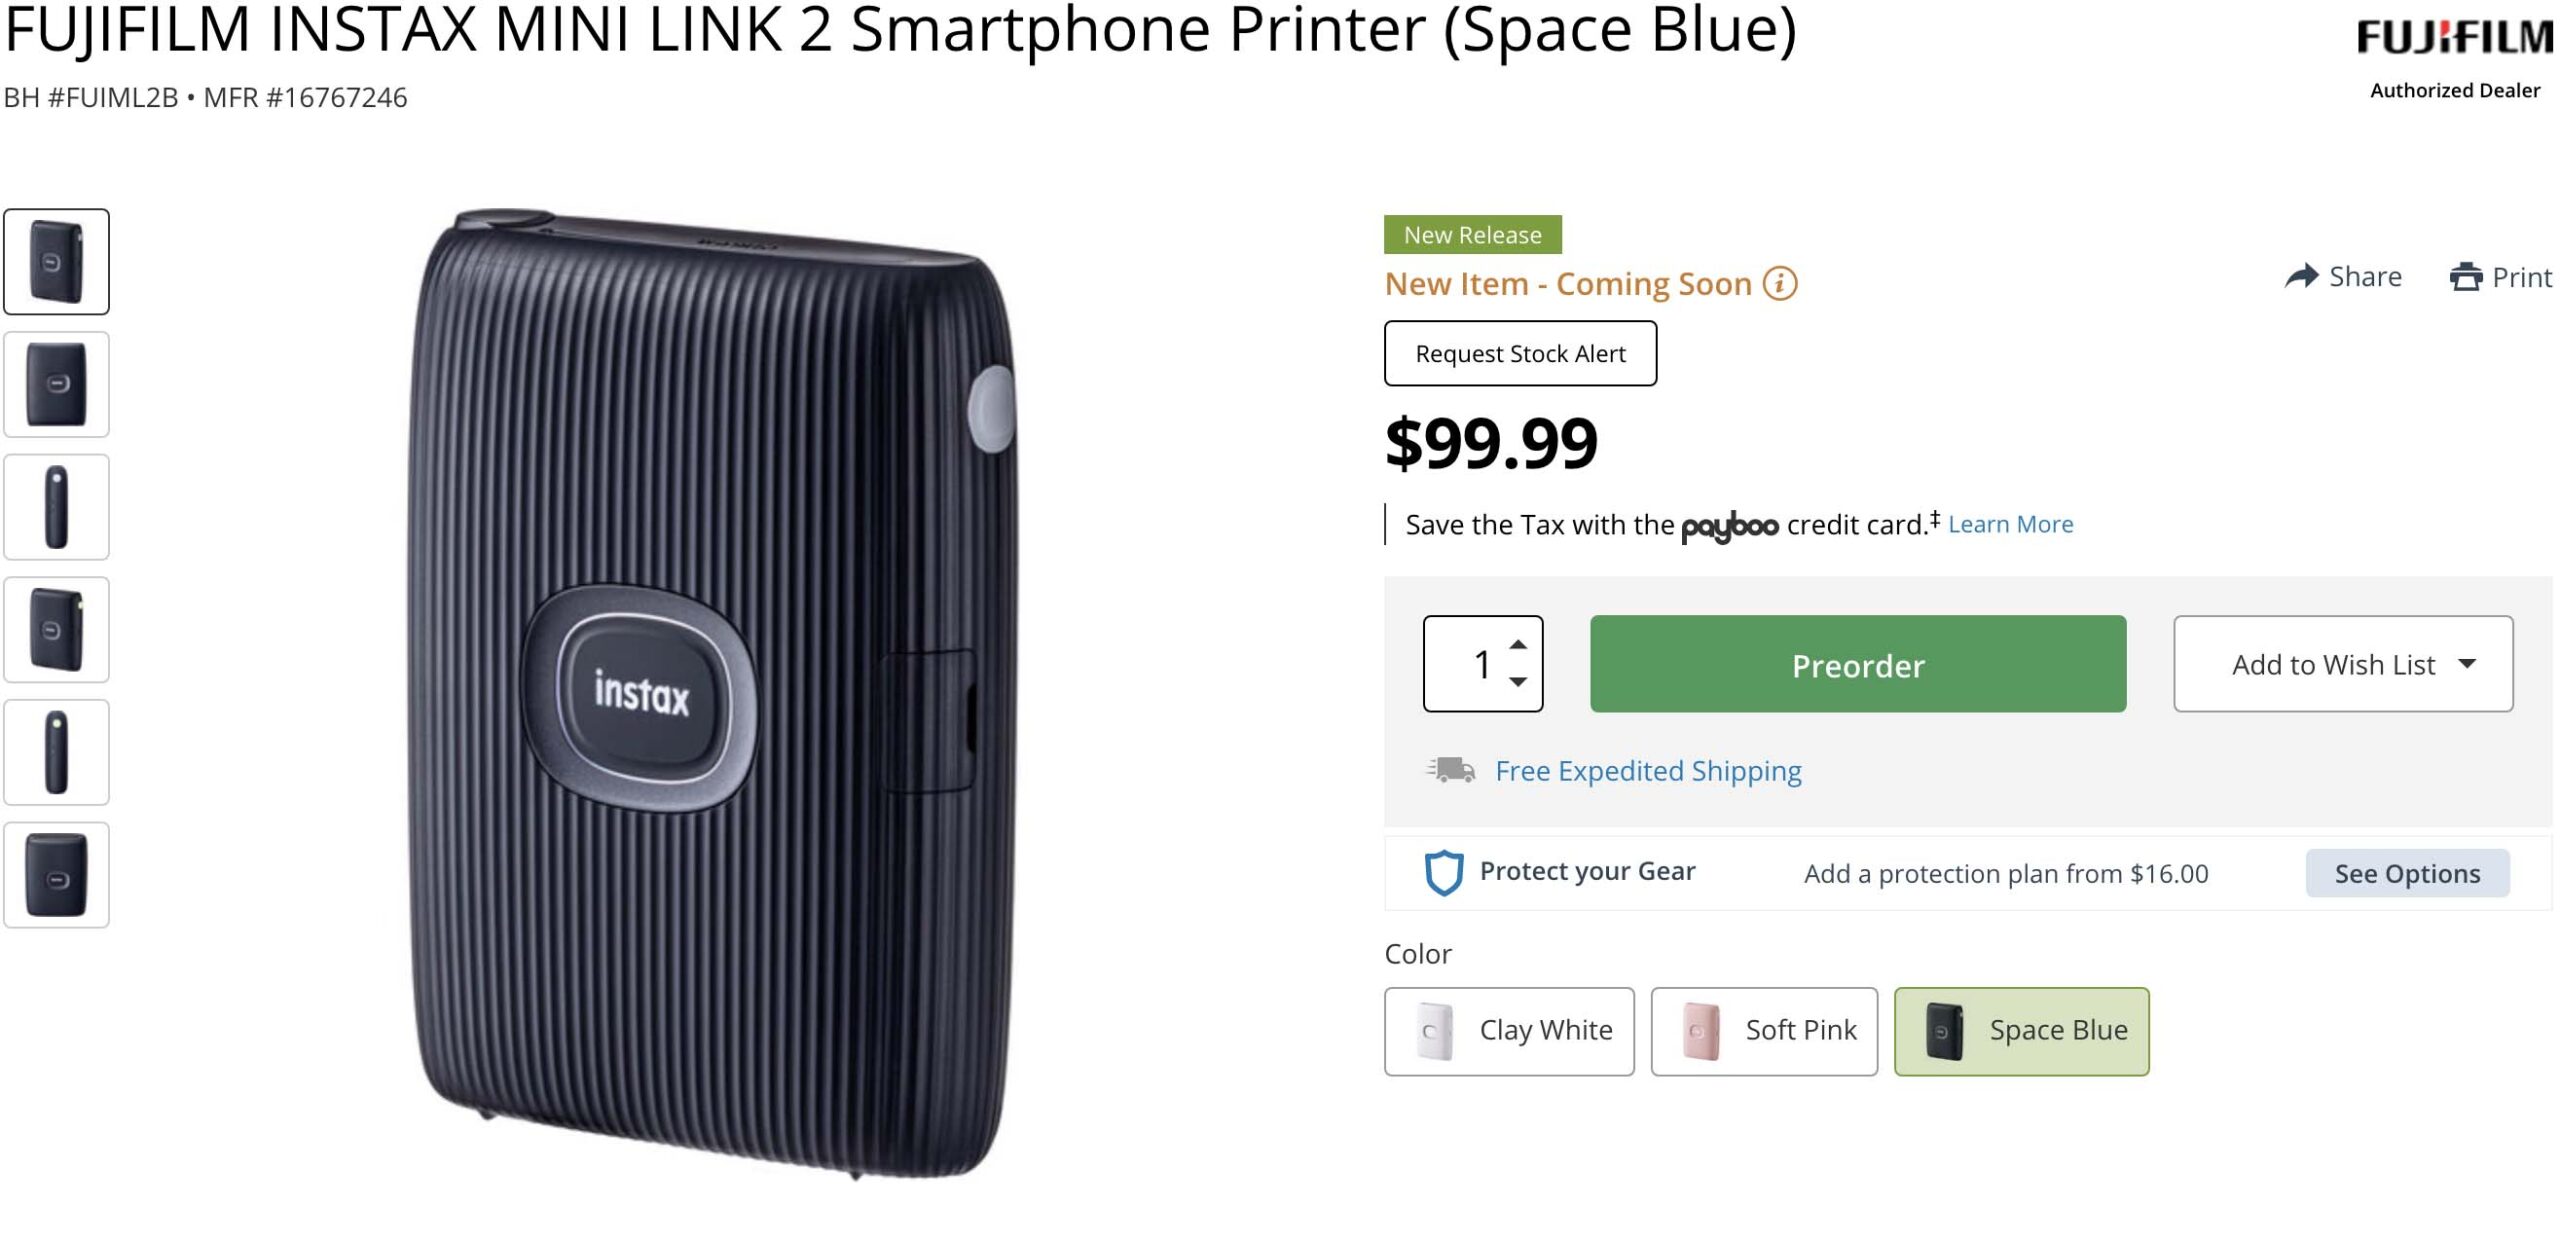 FUJIFILM INSTAX MINI LINK 2 Smartphone Printer (Clay White) - The